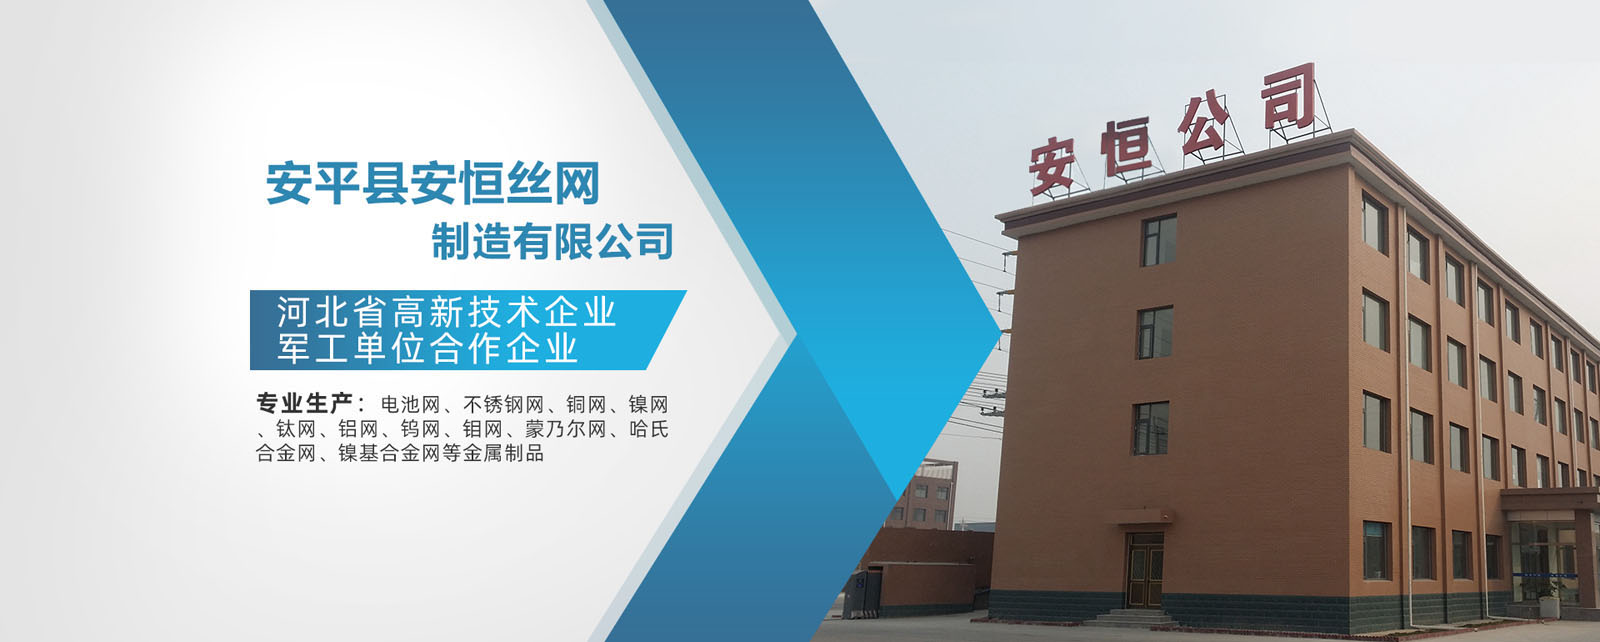 安平县安恒金属丝网制造有限公司